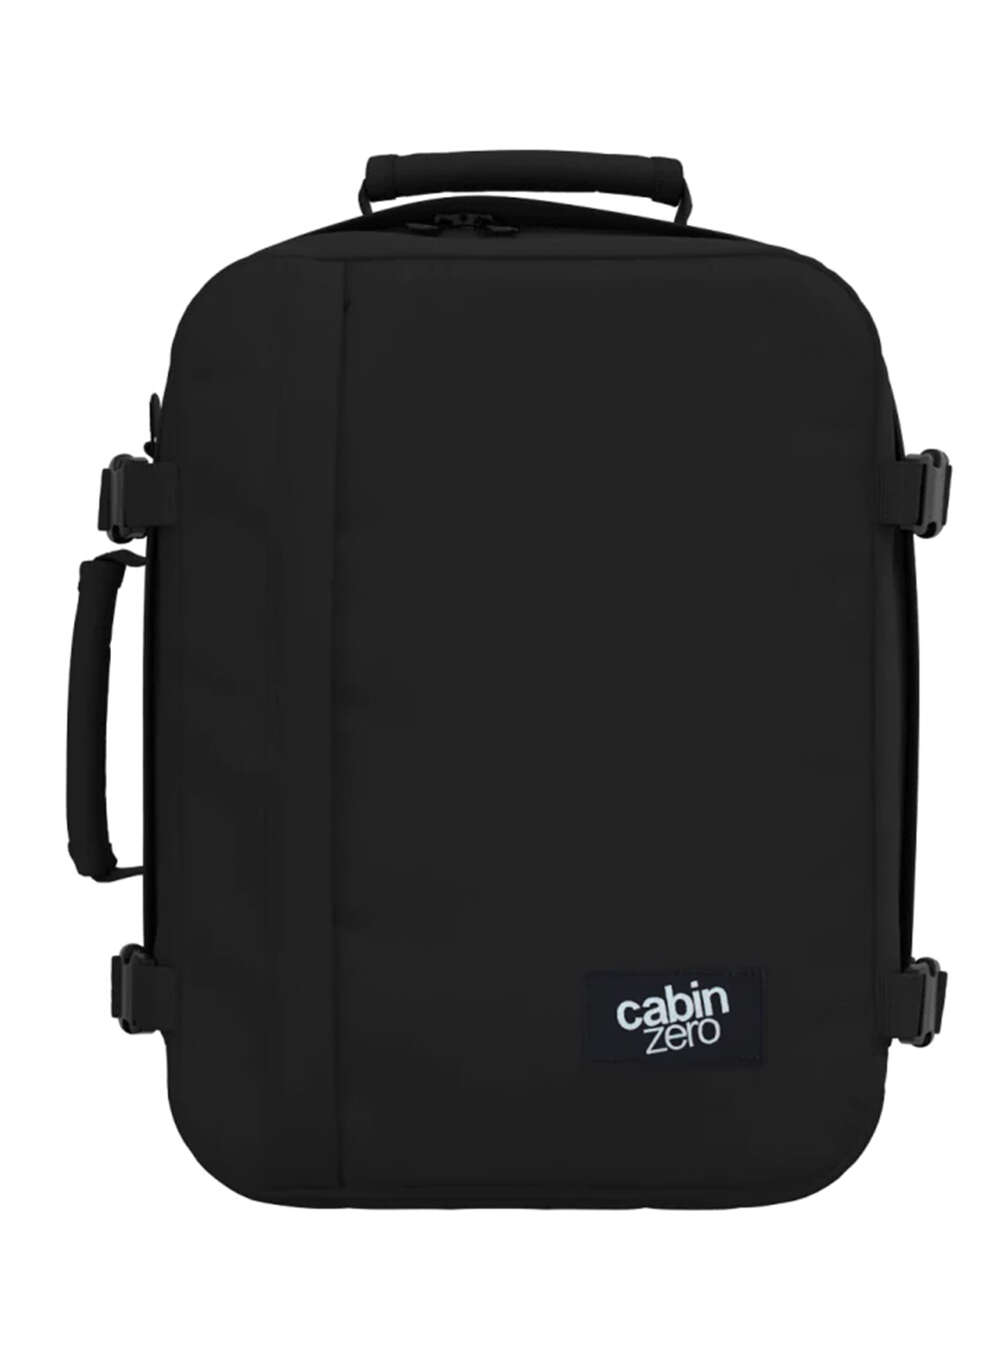 Plecak torba podręczna Cabin Zero Classic 36L Absolute Black. Najlepsze  Ceny! 